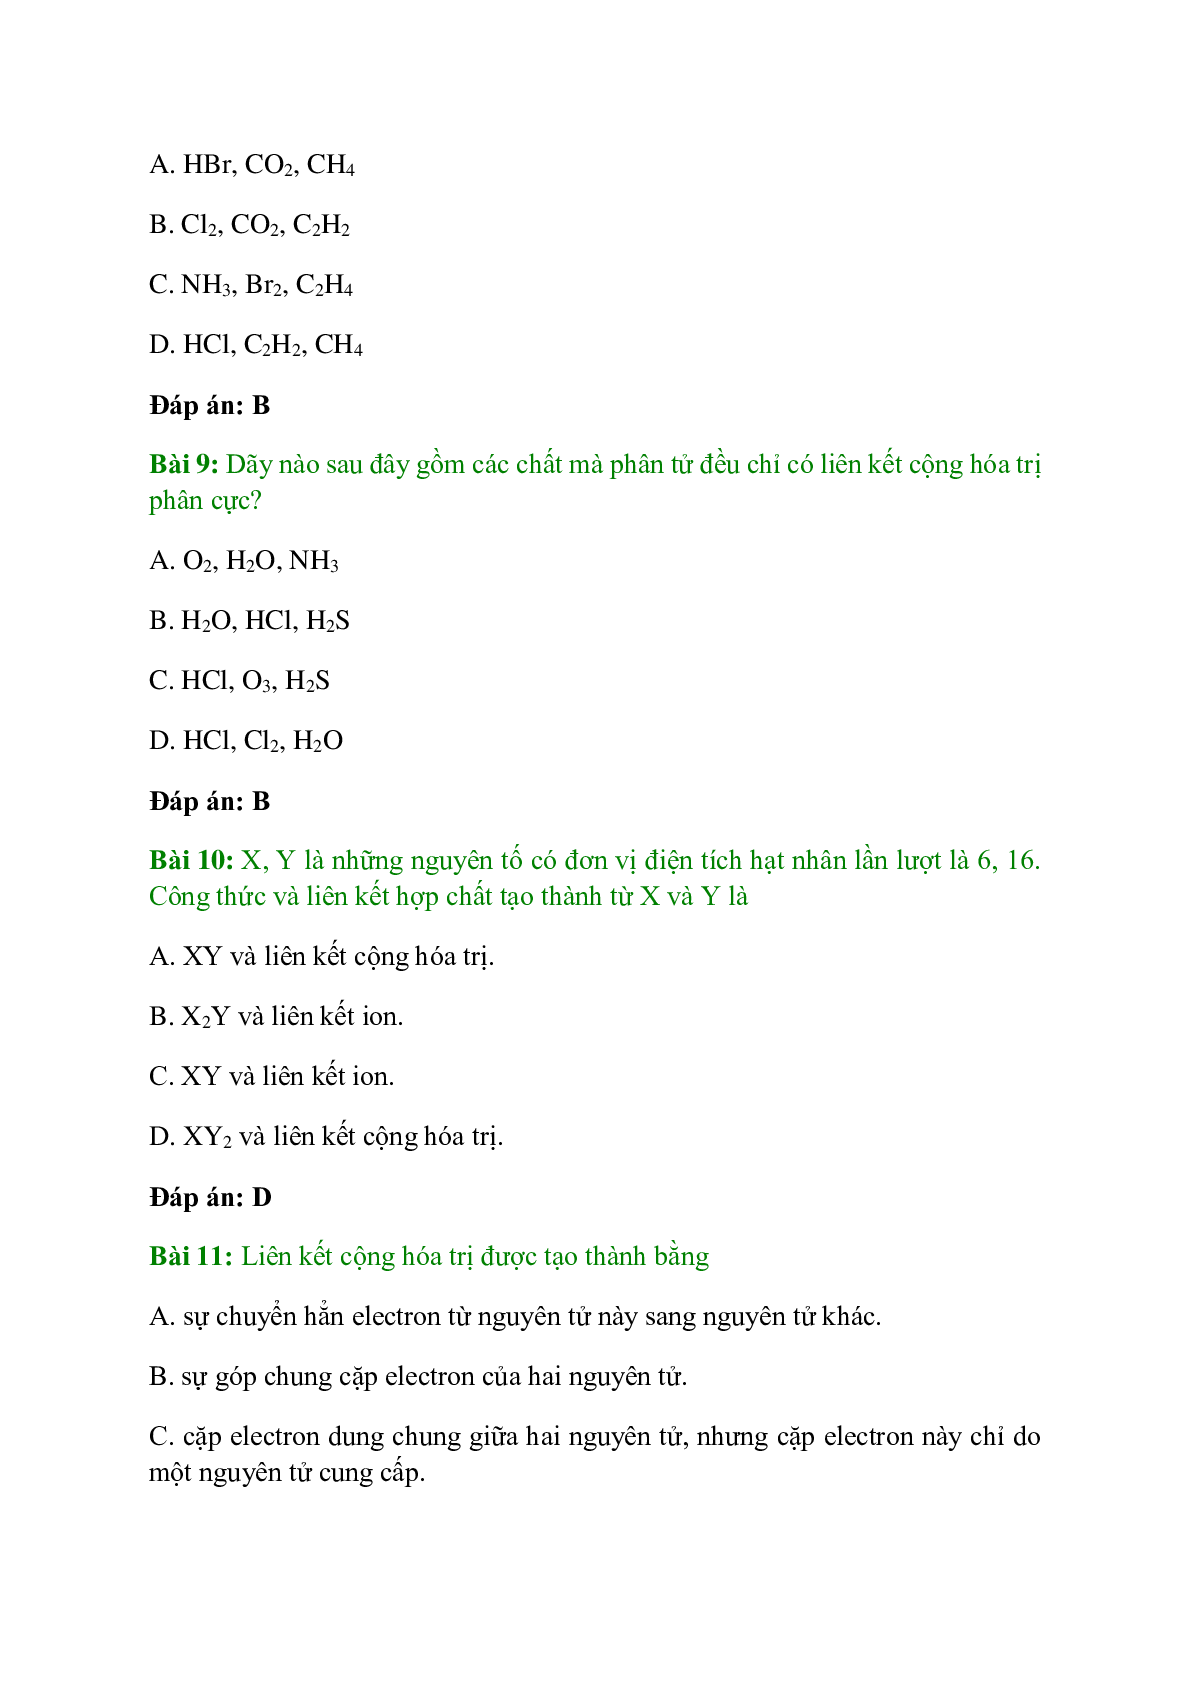 Trắc nghiệm Liên kết cộng hóa trị có đáp án - Hóa học 10 (trang 3)